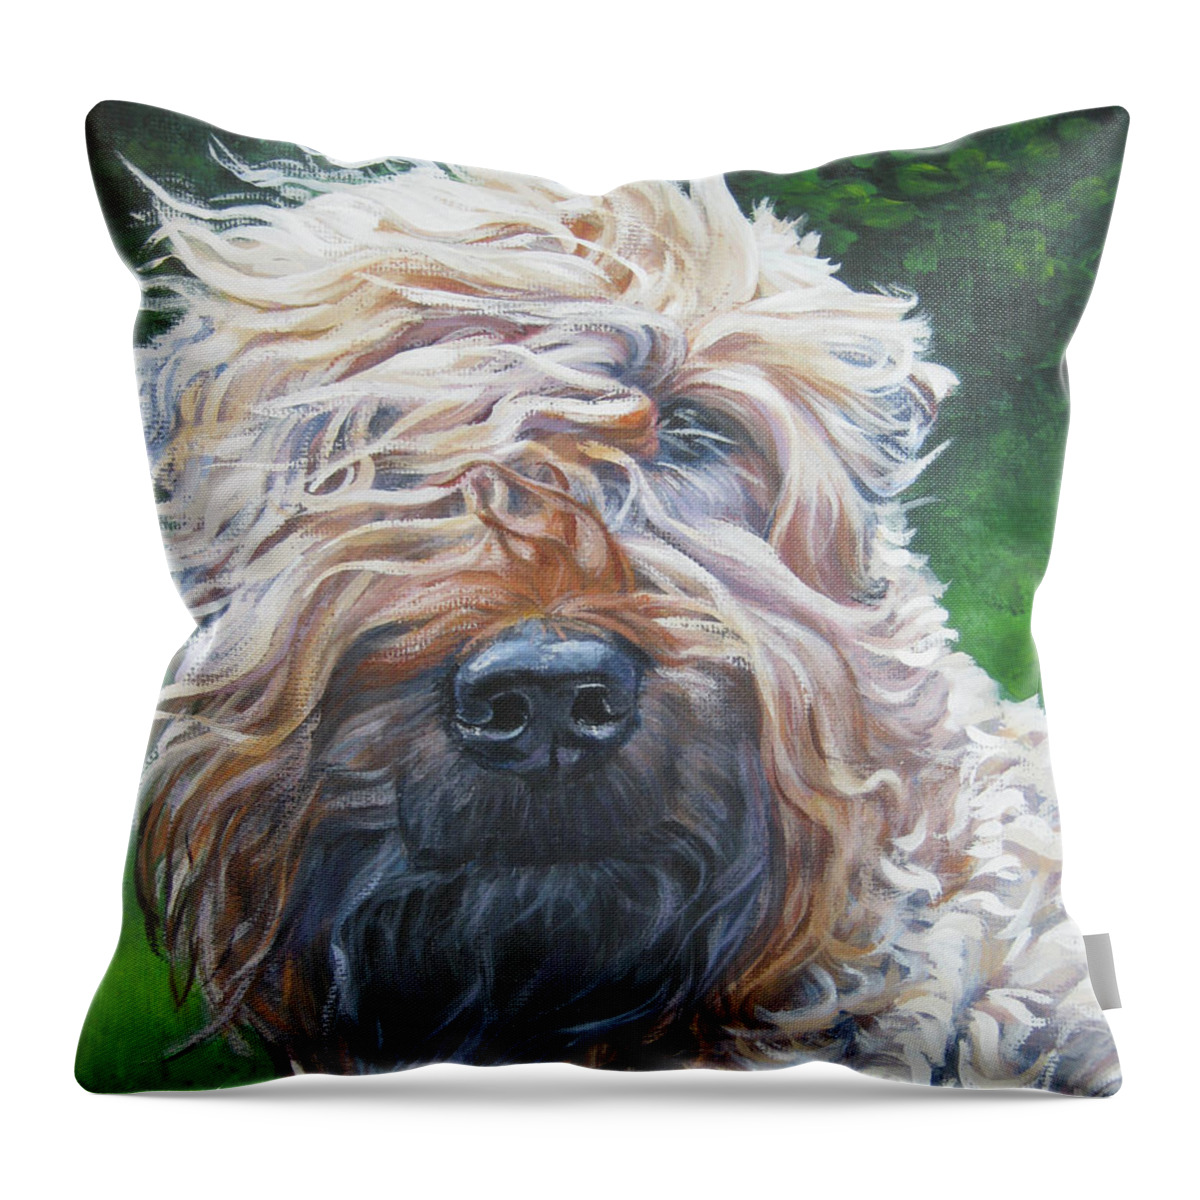 Soft Coated Wheaten Terrier Throw Pillow featuring the painting Soft Coated Wheaten Terrier by Lee Ann Shepard